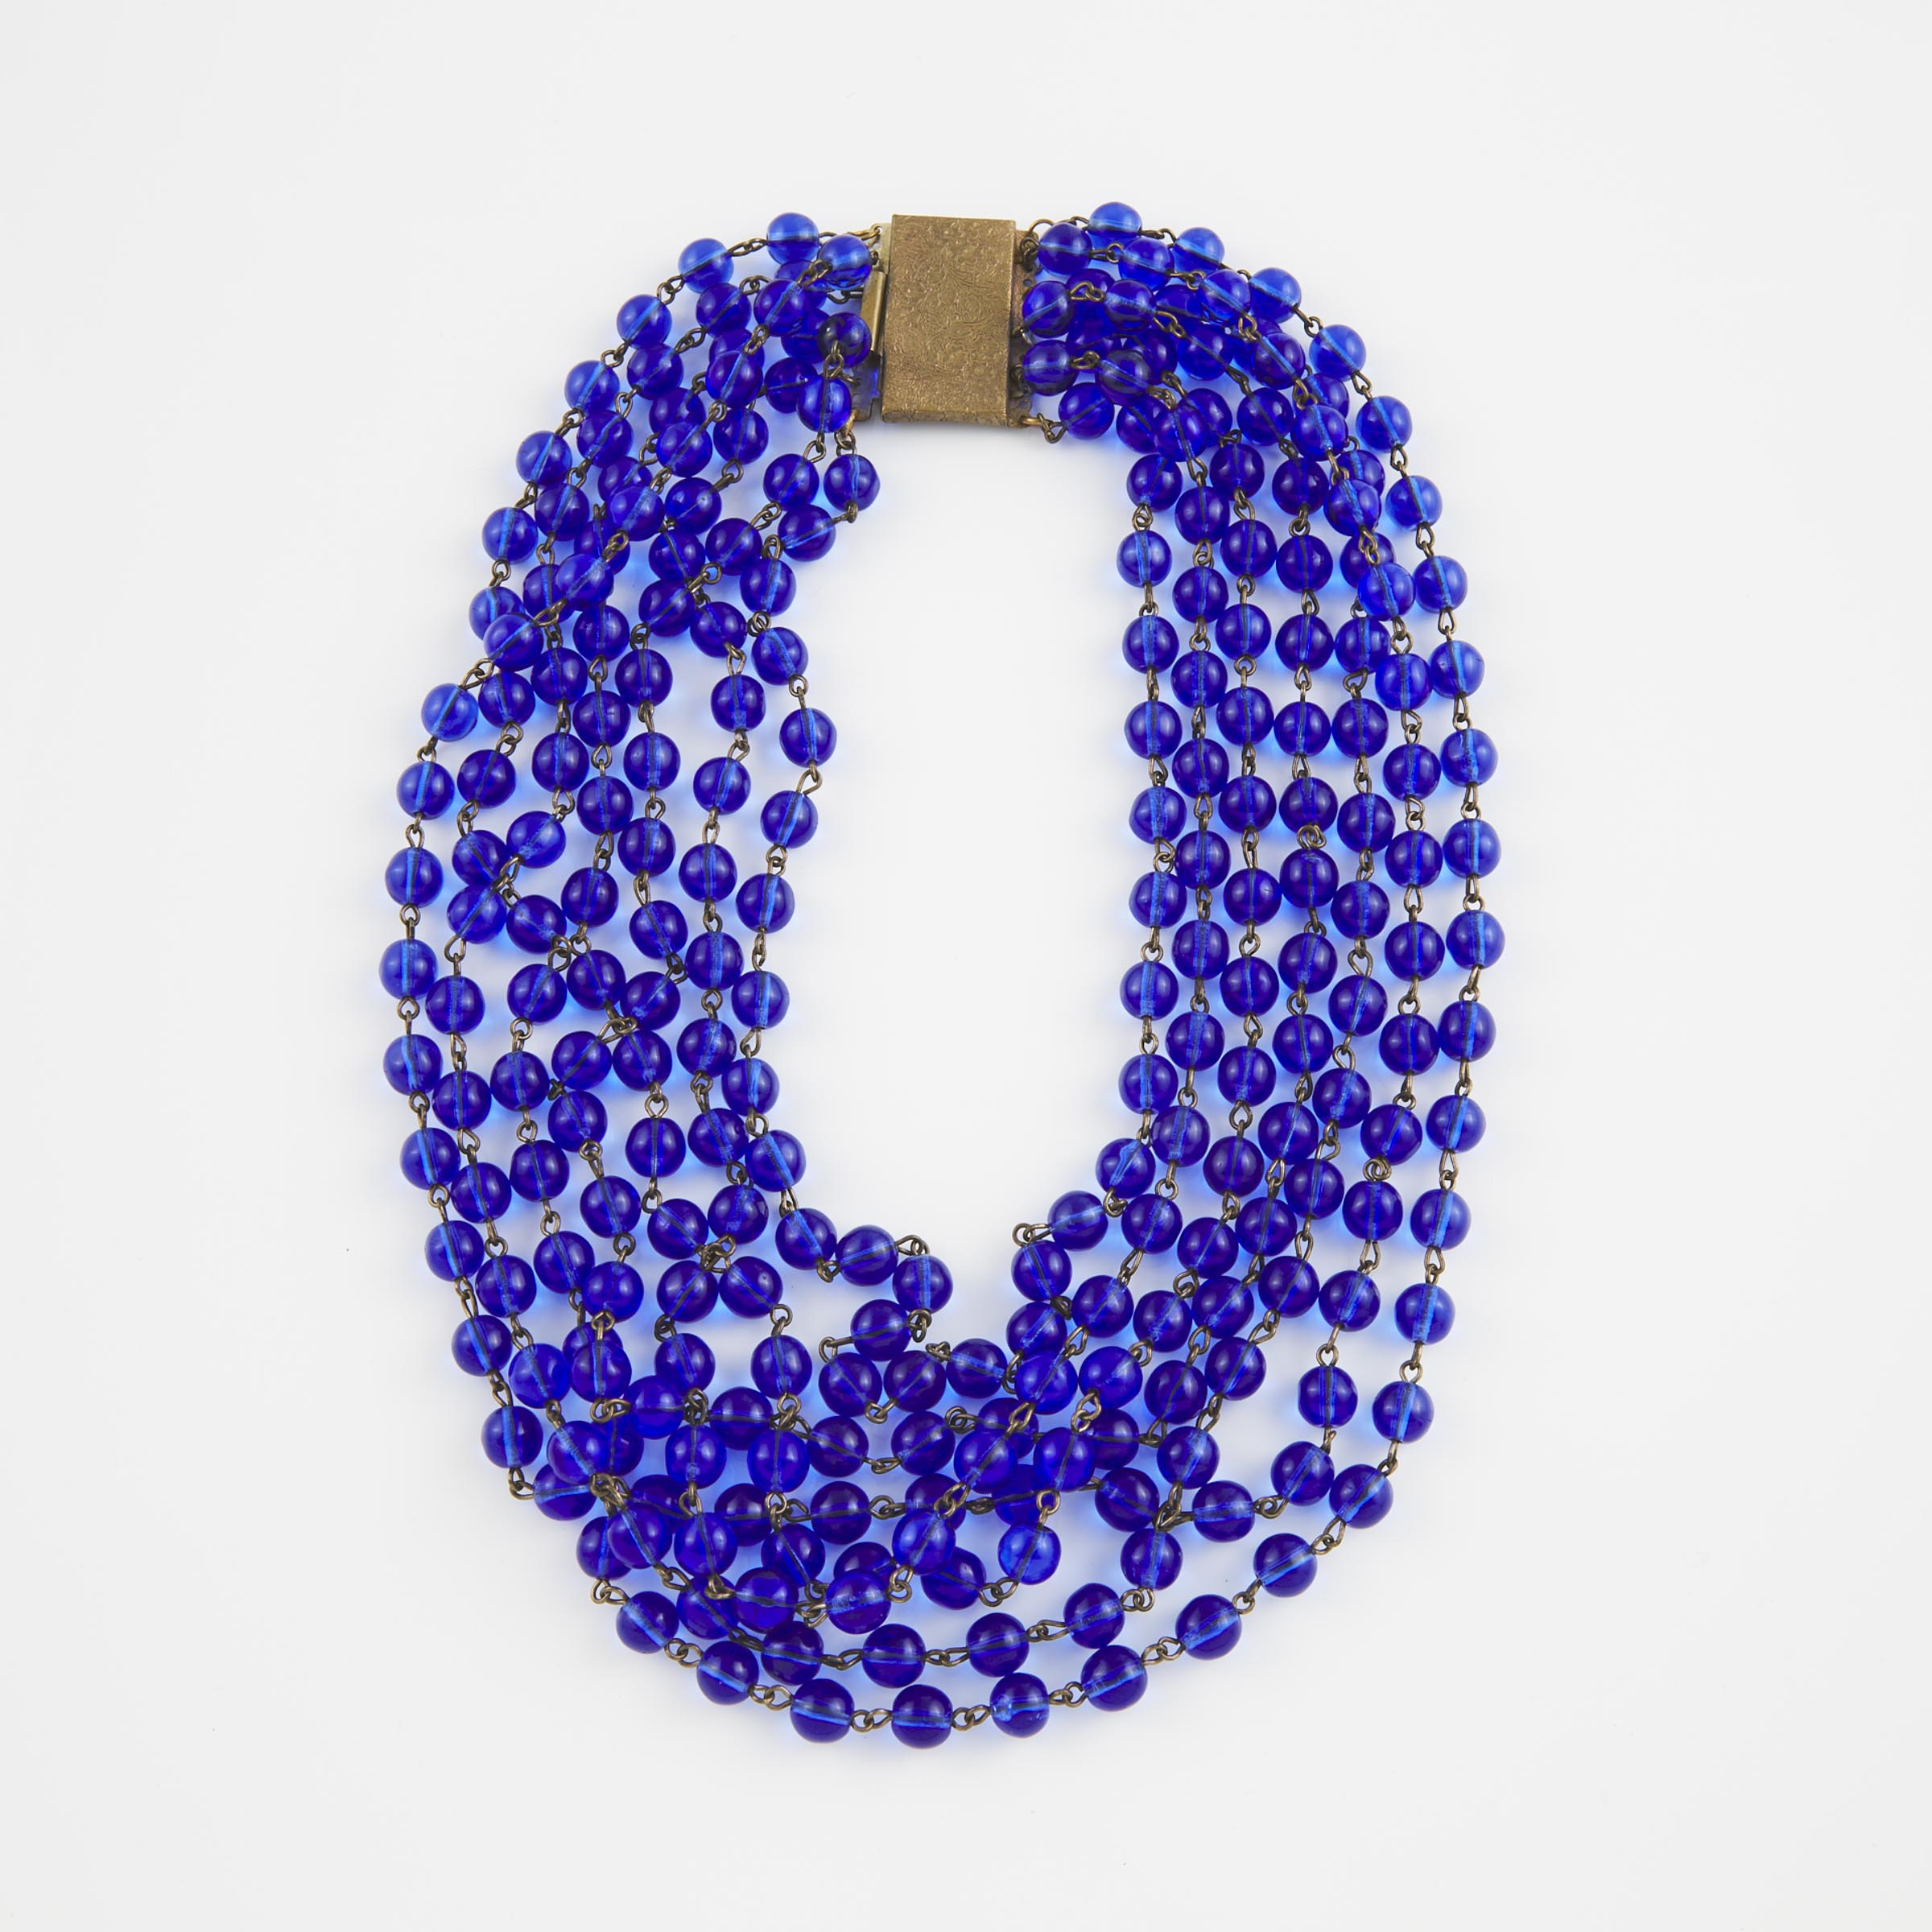 7-Strand Cobalt Blue Glass Bead